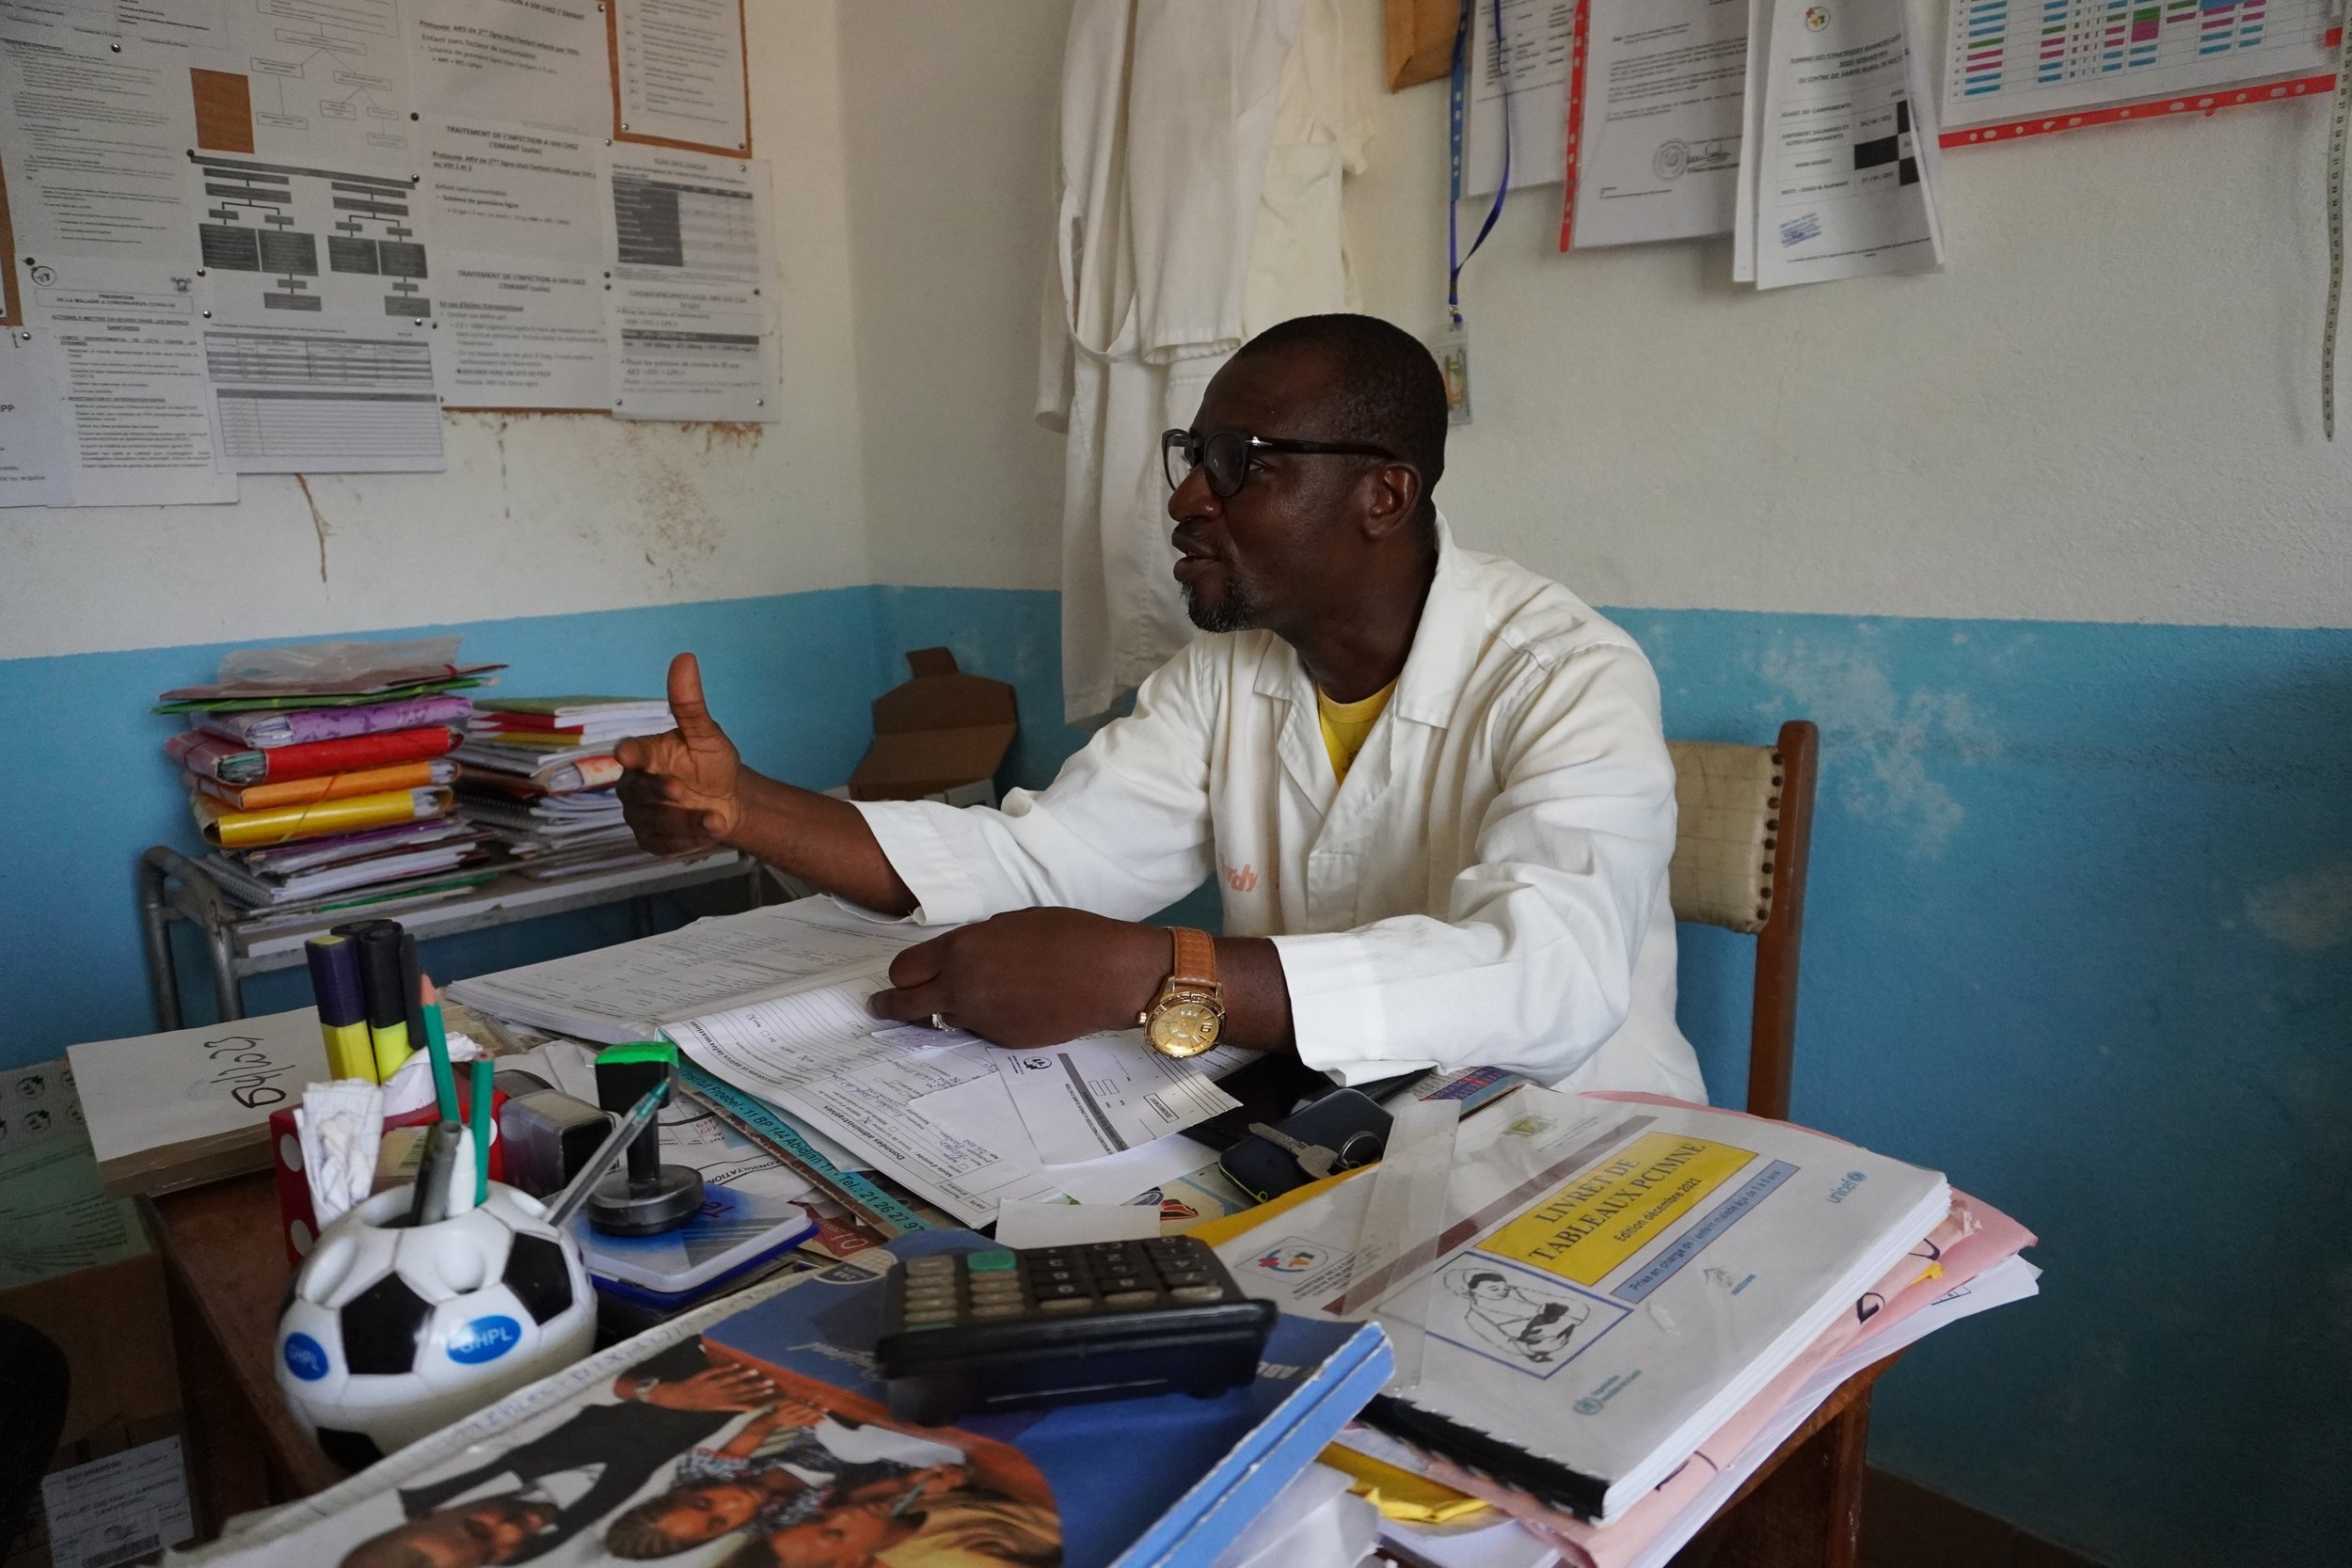  Marc Ane Etilè, infirmier titulaire, est appelé affectueusement “docteur” par les habitants de Roc. Il explique qu’il se concentre sur la prévention, pour éviter d’envoyer des patients à l’Hôpital de San Pedro.  